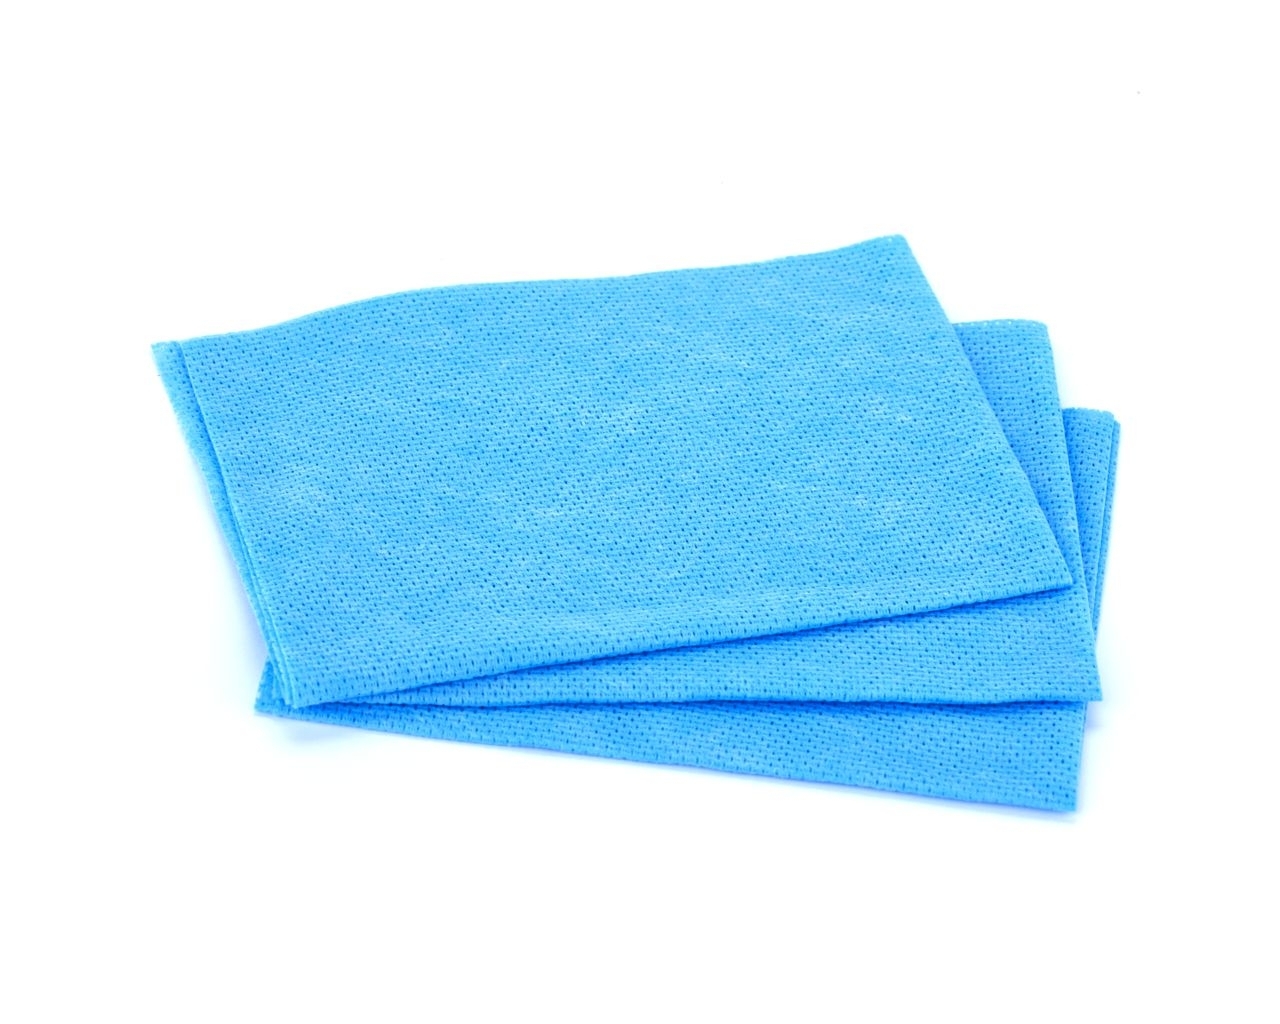 Czyściwo włókninowe w listkach 30x30 cm MERIDA, niebieskie, opakowanie 20 sztuk